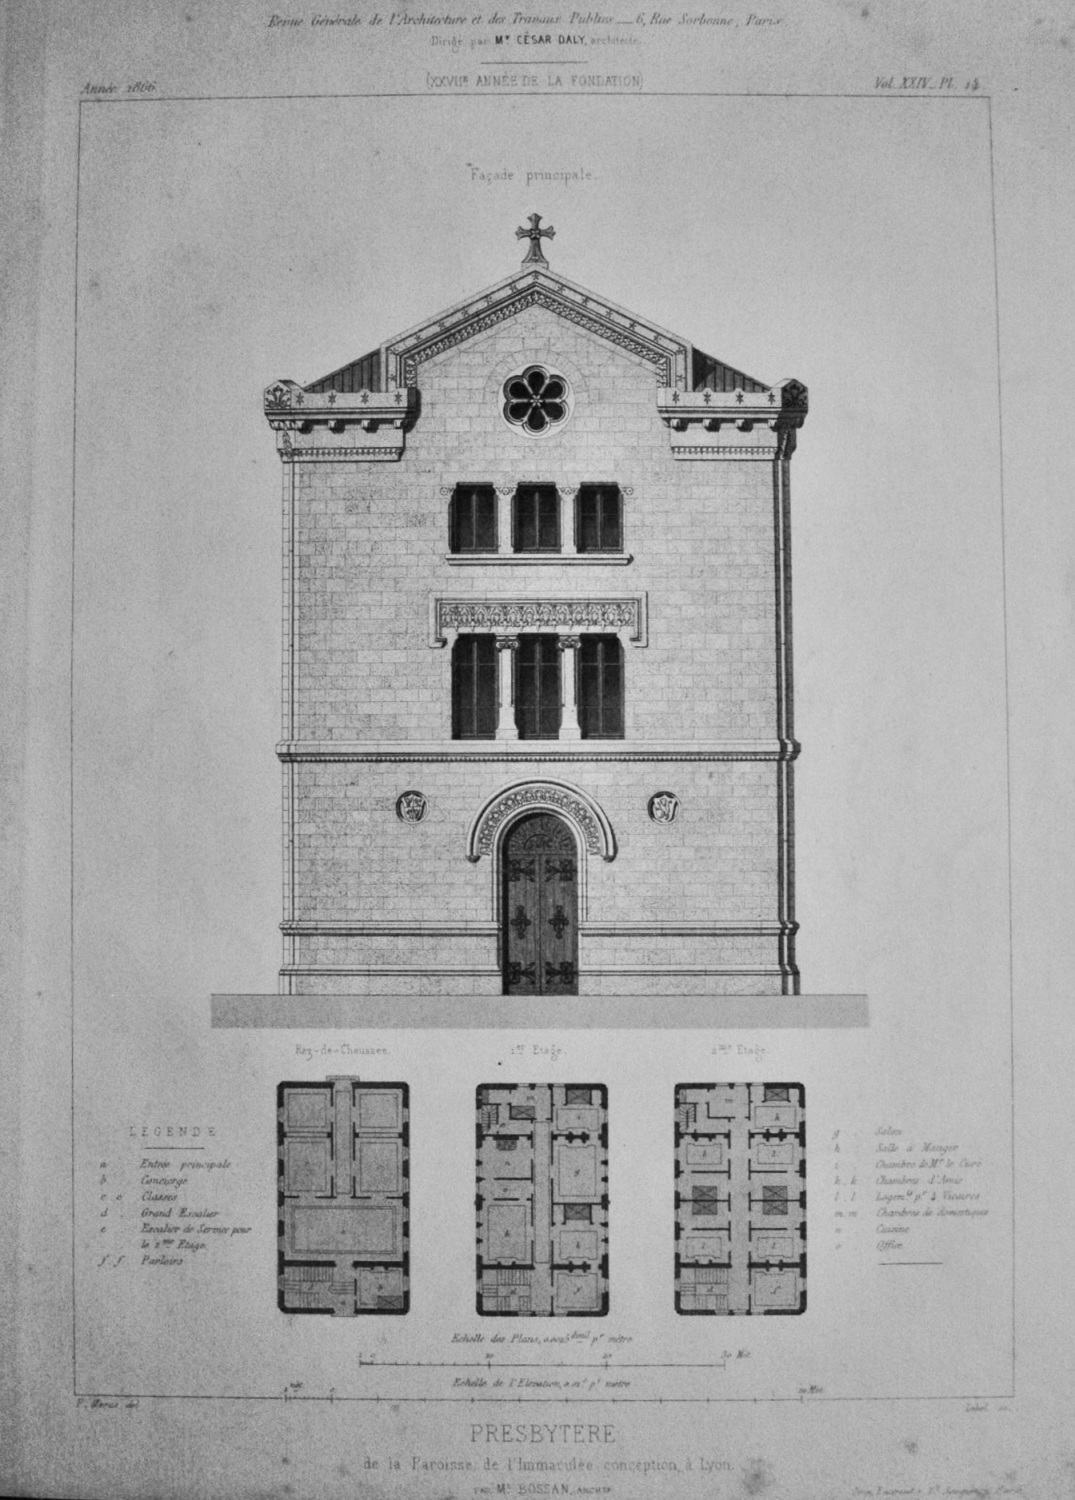 Presbytere.  de la Paroisse de l'Immaculate conception, a Lyon,  1866.